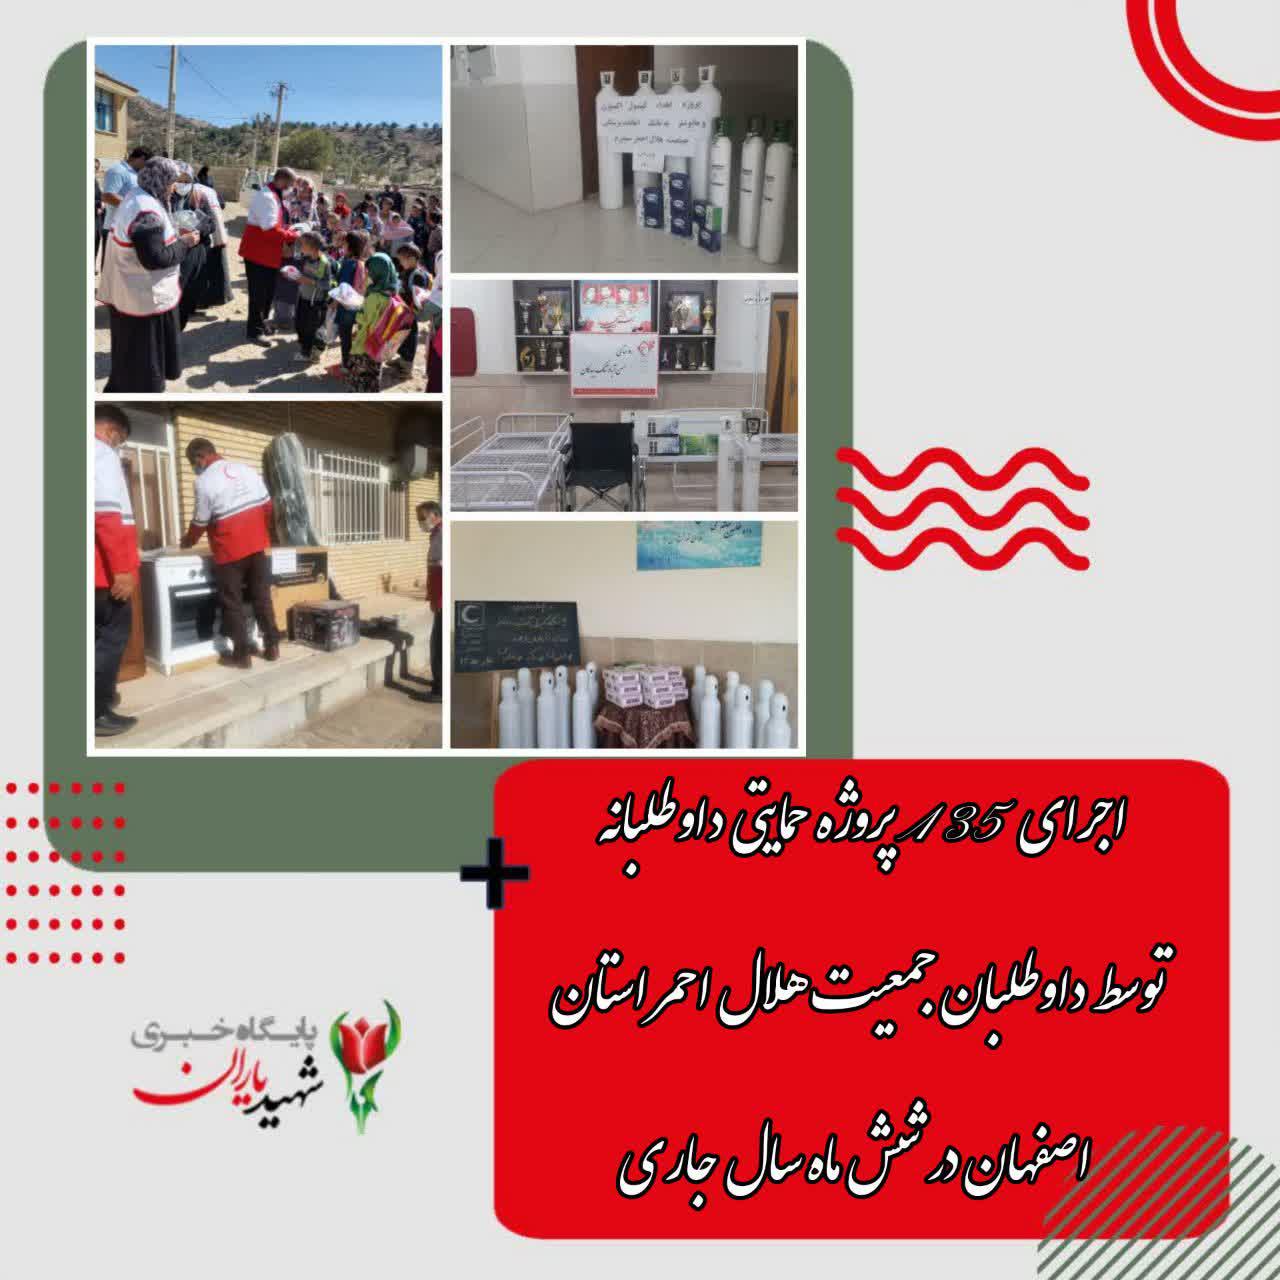 اجرای ۱۳۵ پروژه حمایتی داوطلبانه توسط داوطلبان جمعیت هلال احمر استان اصفهان در شش ماه سال جاری